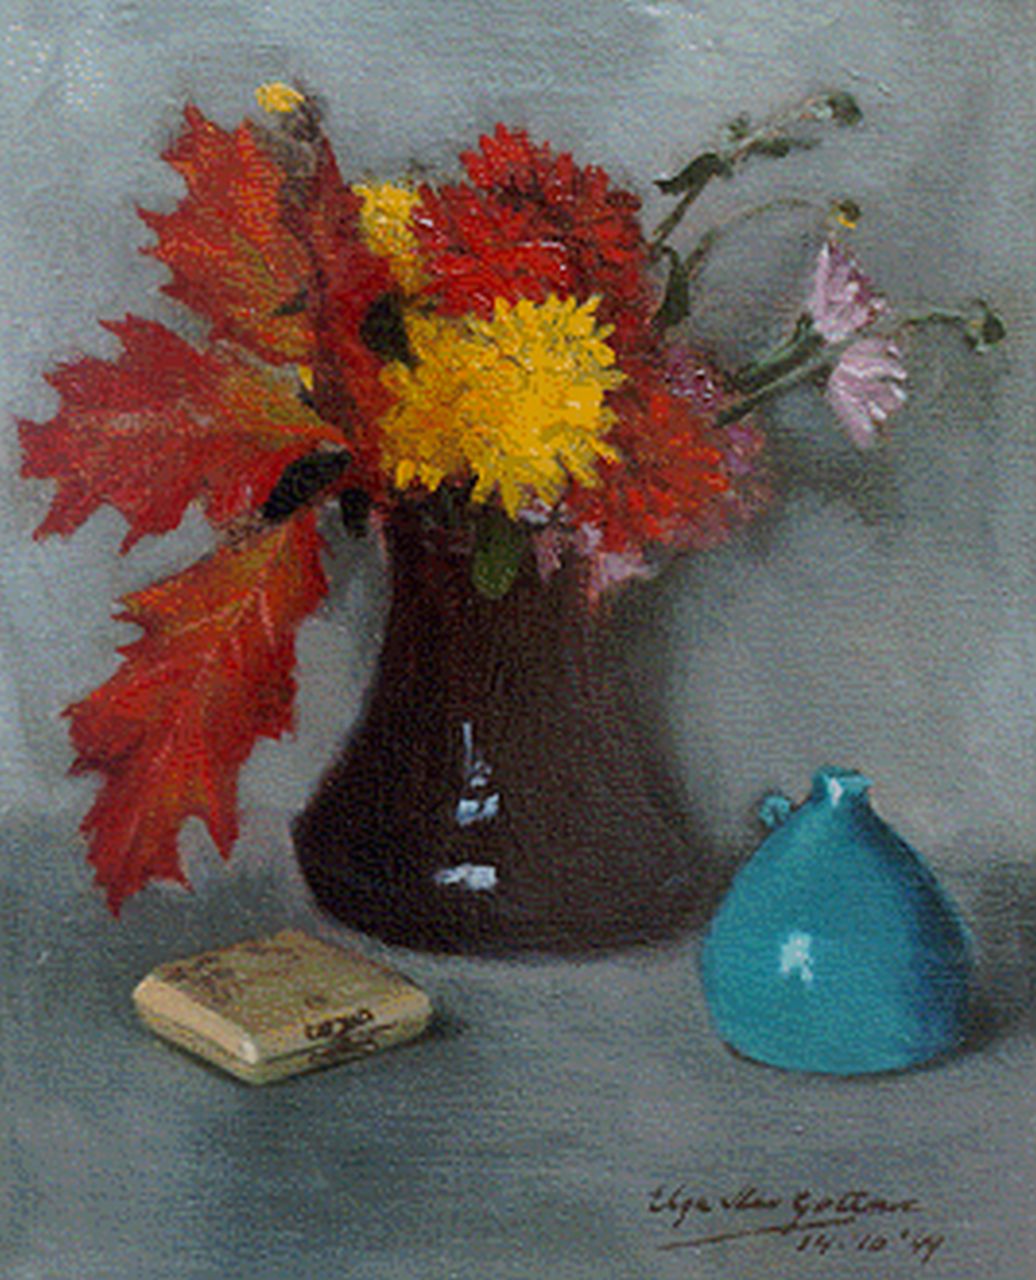 Gottnic E.S. von | Elga von Gottnic, A colourful Bouquet, Öl auf Leinwand 30,0 x 24,3 cm, signed l.r. und dated '49